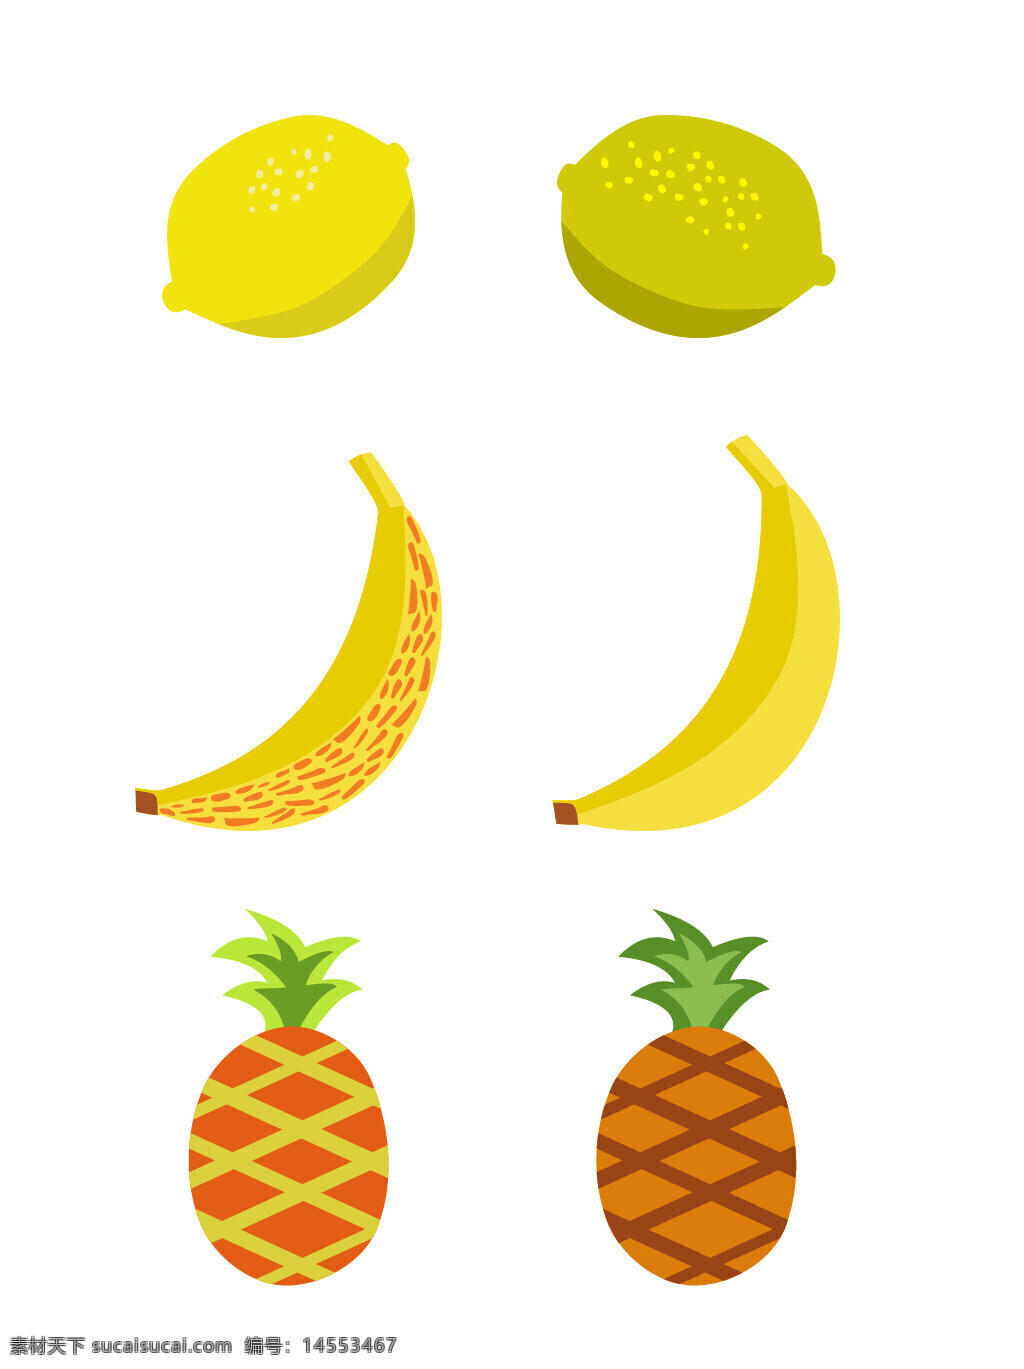 柠檬 香蕉 菠萝 水果 瓜果 食物 手绘水果 矢量水果 手绘素材 矢量素材 新鲜水果 植物